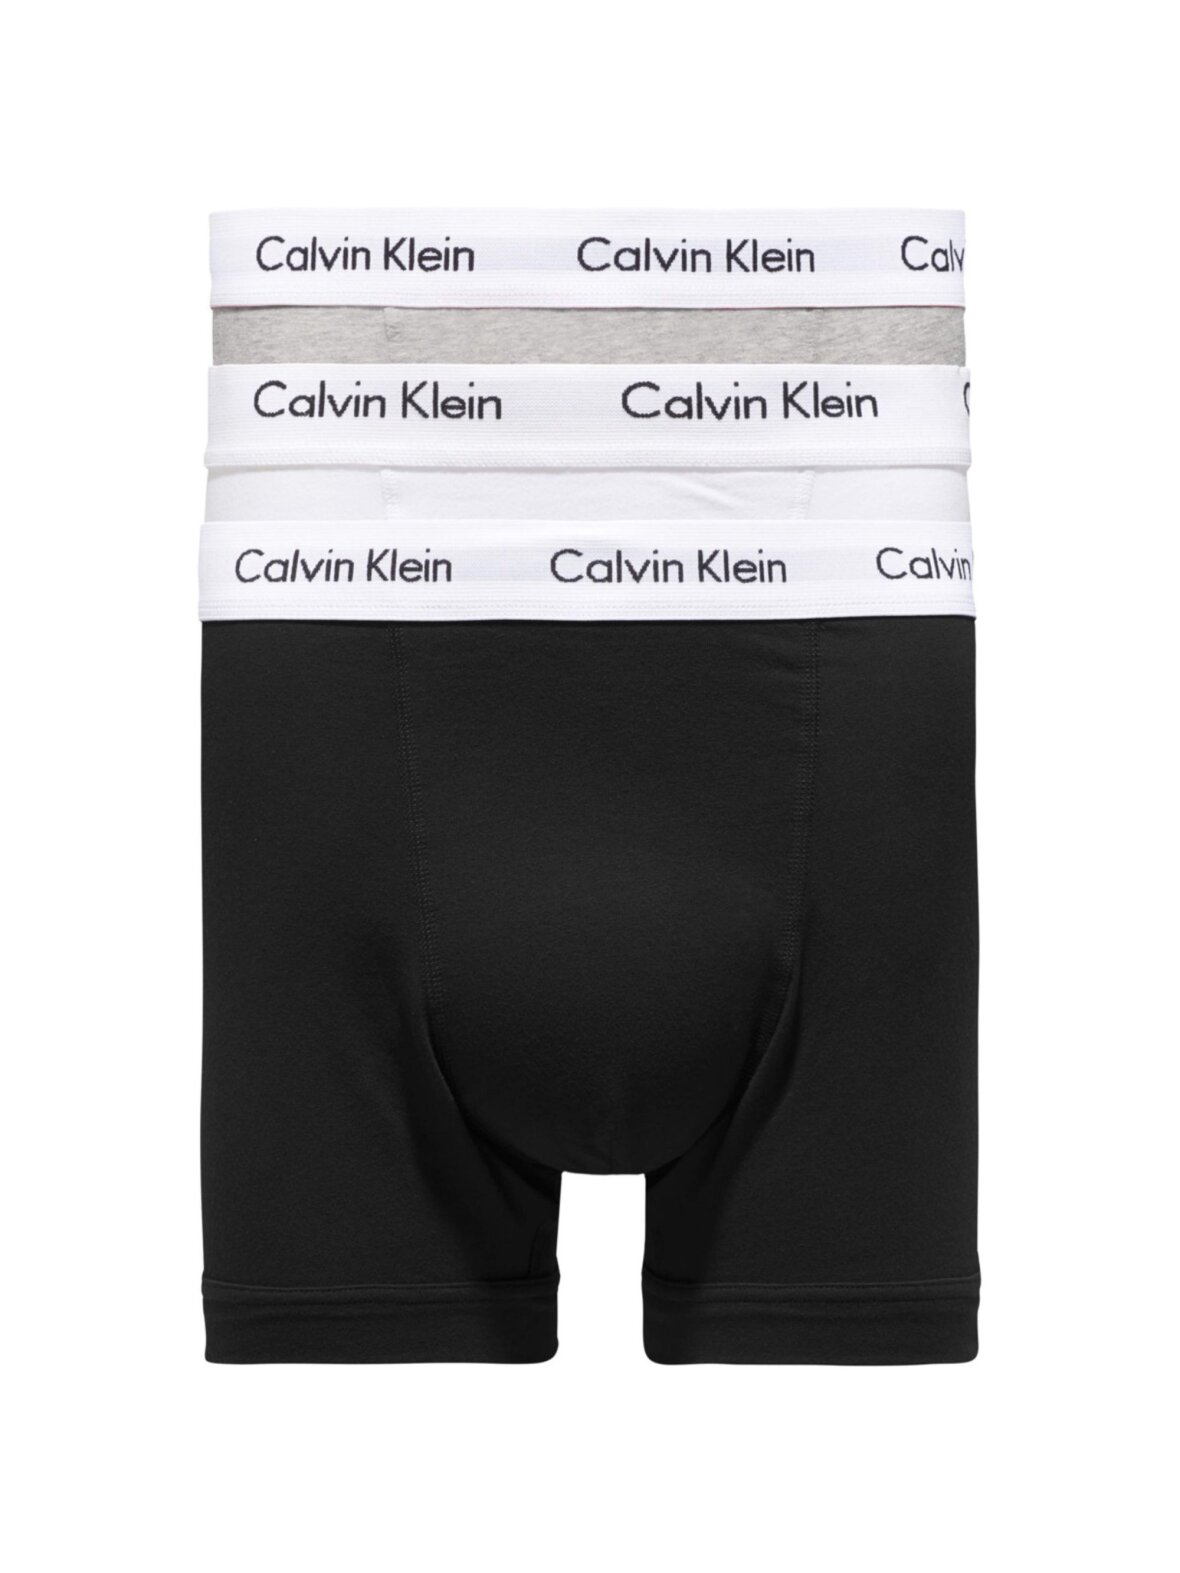 Beundringsværdig erotisk stavelse CC Christensen - Undertøj - Calvin Klein Underwear - Calvin Klein 3p trunk